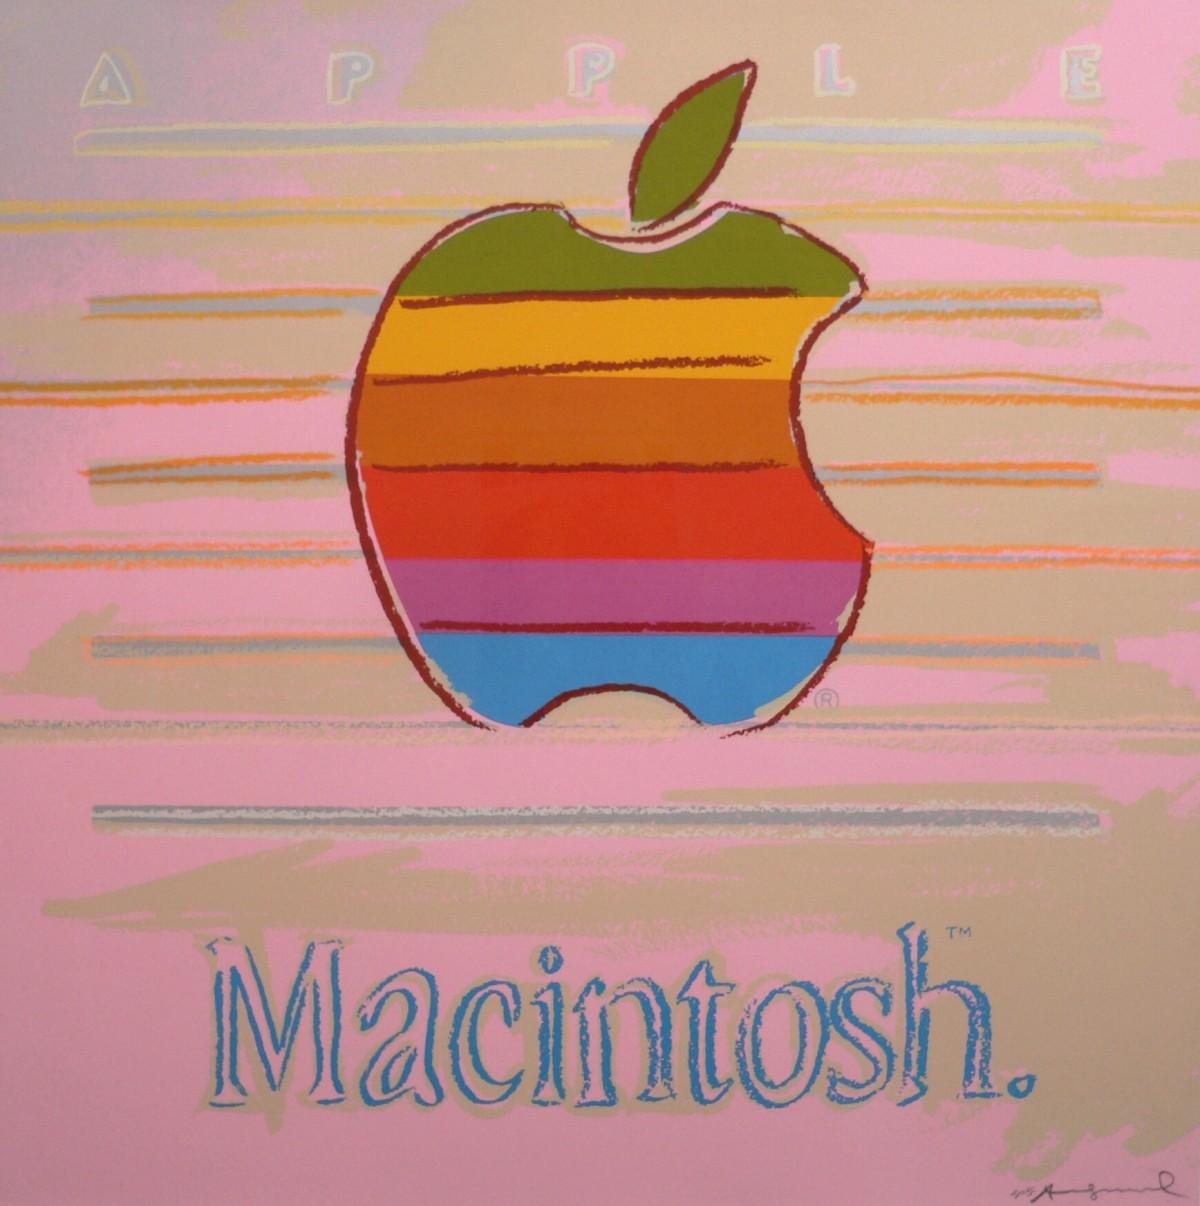 Andy Warhol Print - Apple (FS II.359)